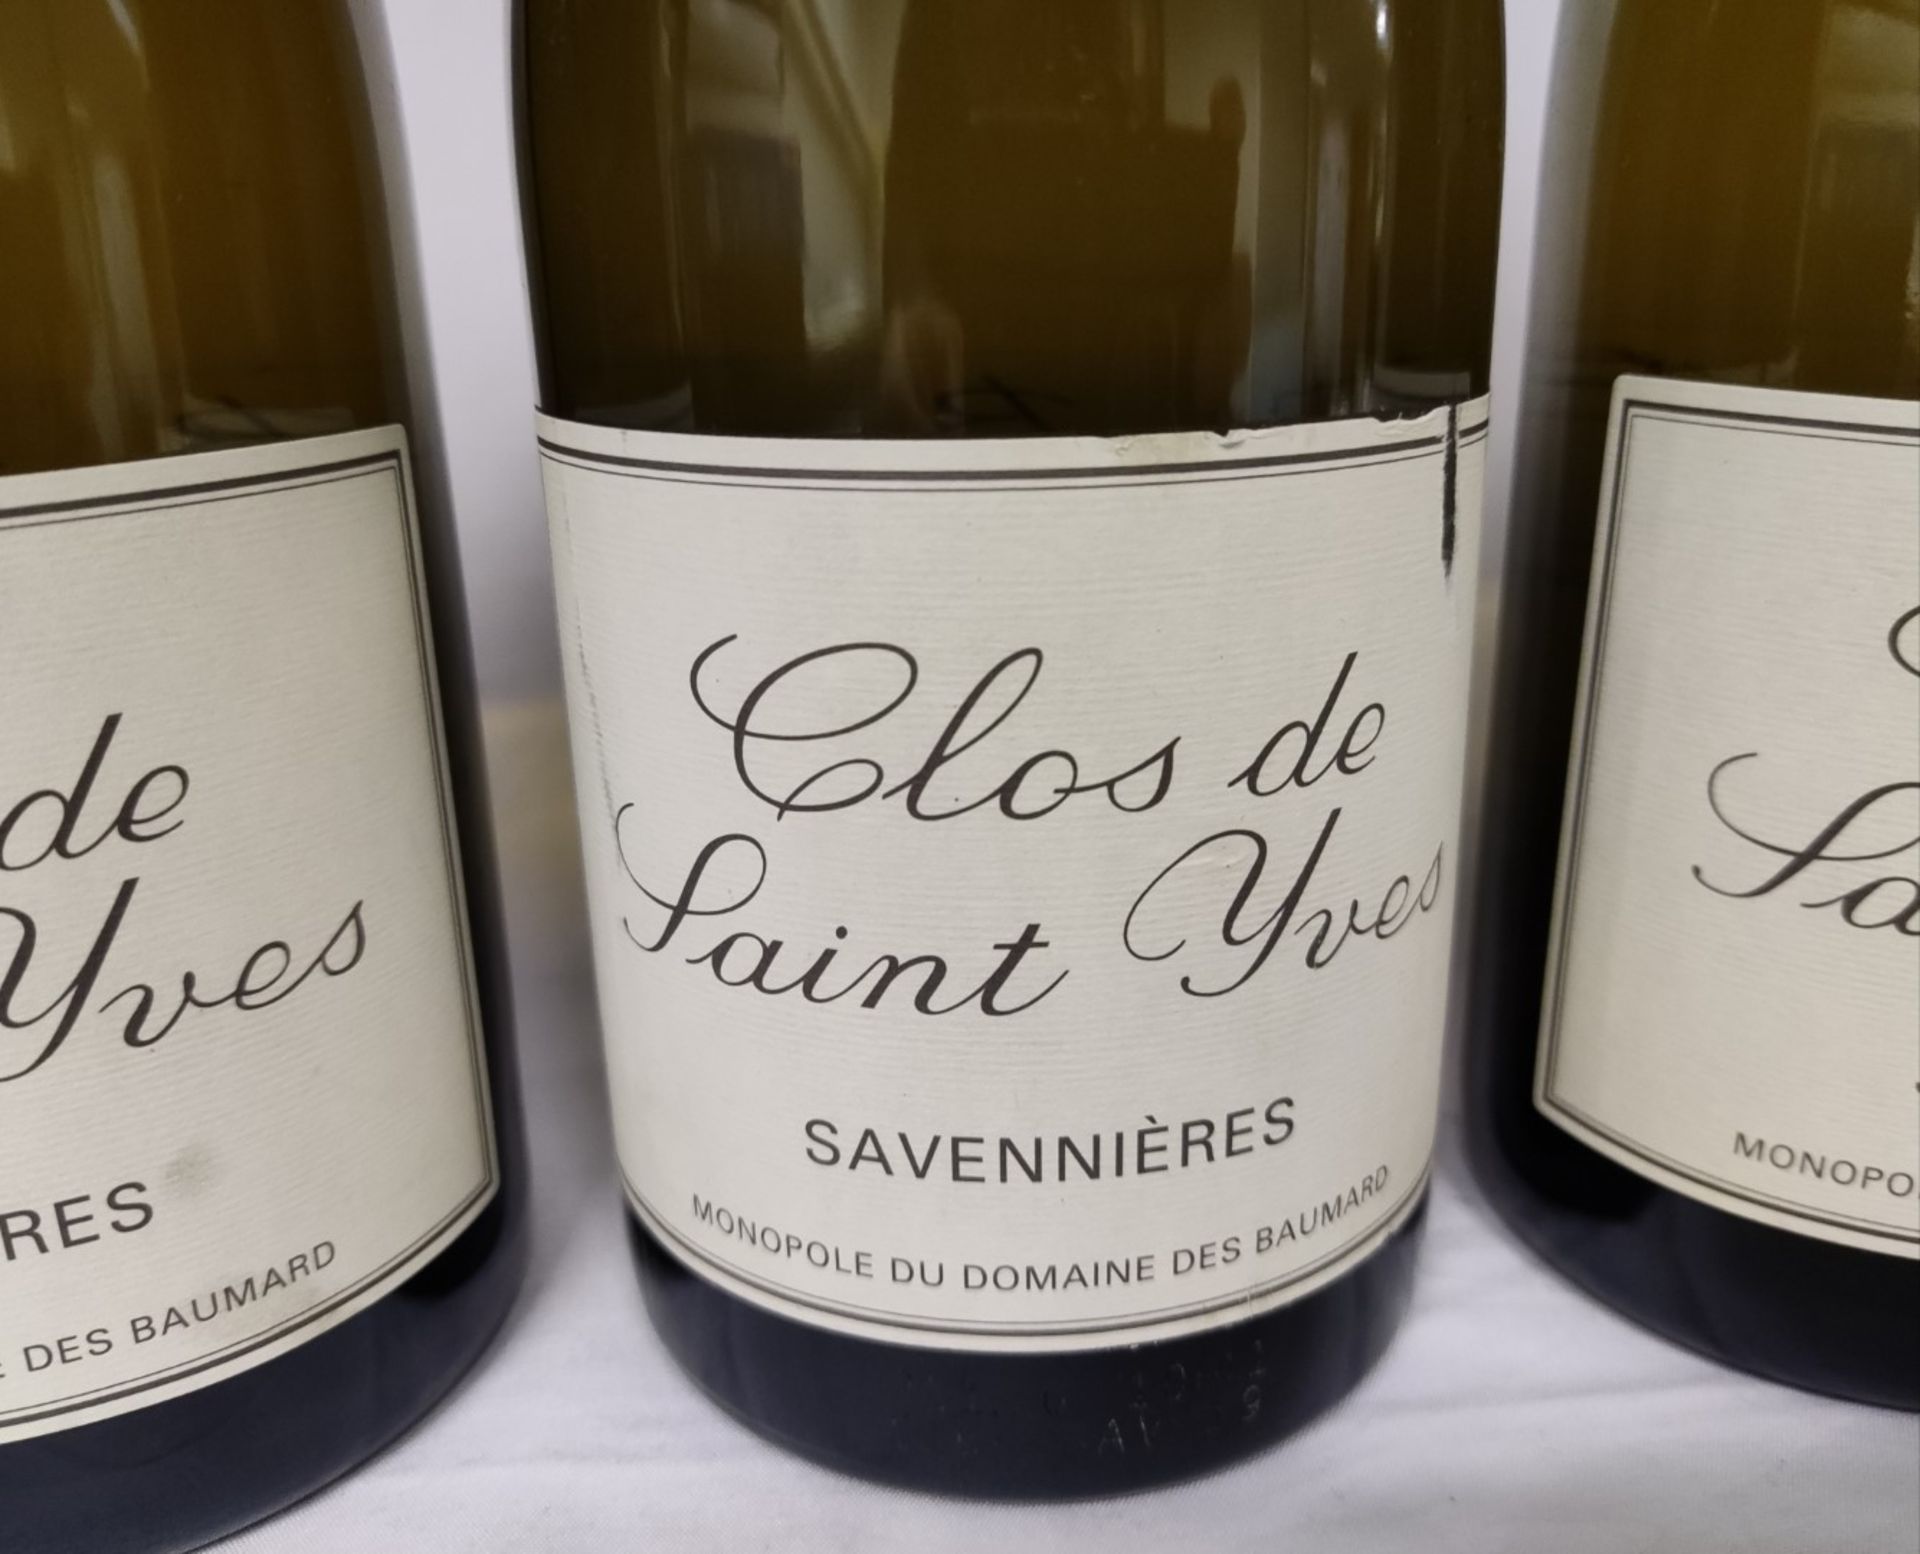 3 x Bottles of 2019 Clos De Saint Yves Savennieres, Monopole Du Domaine Des Baumard White Wine - Image 8 of 8